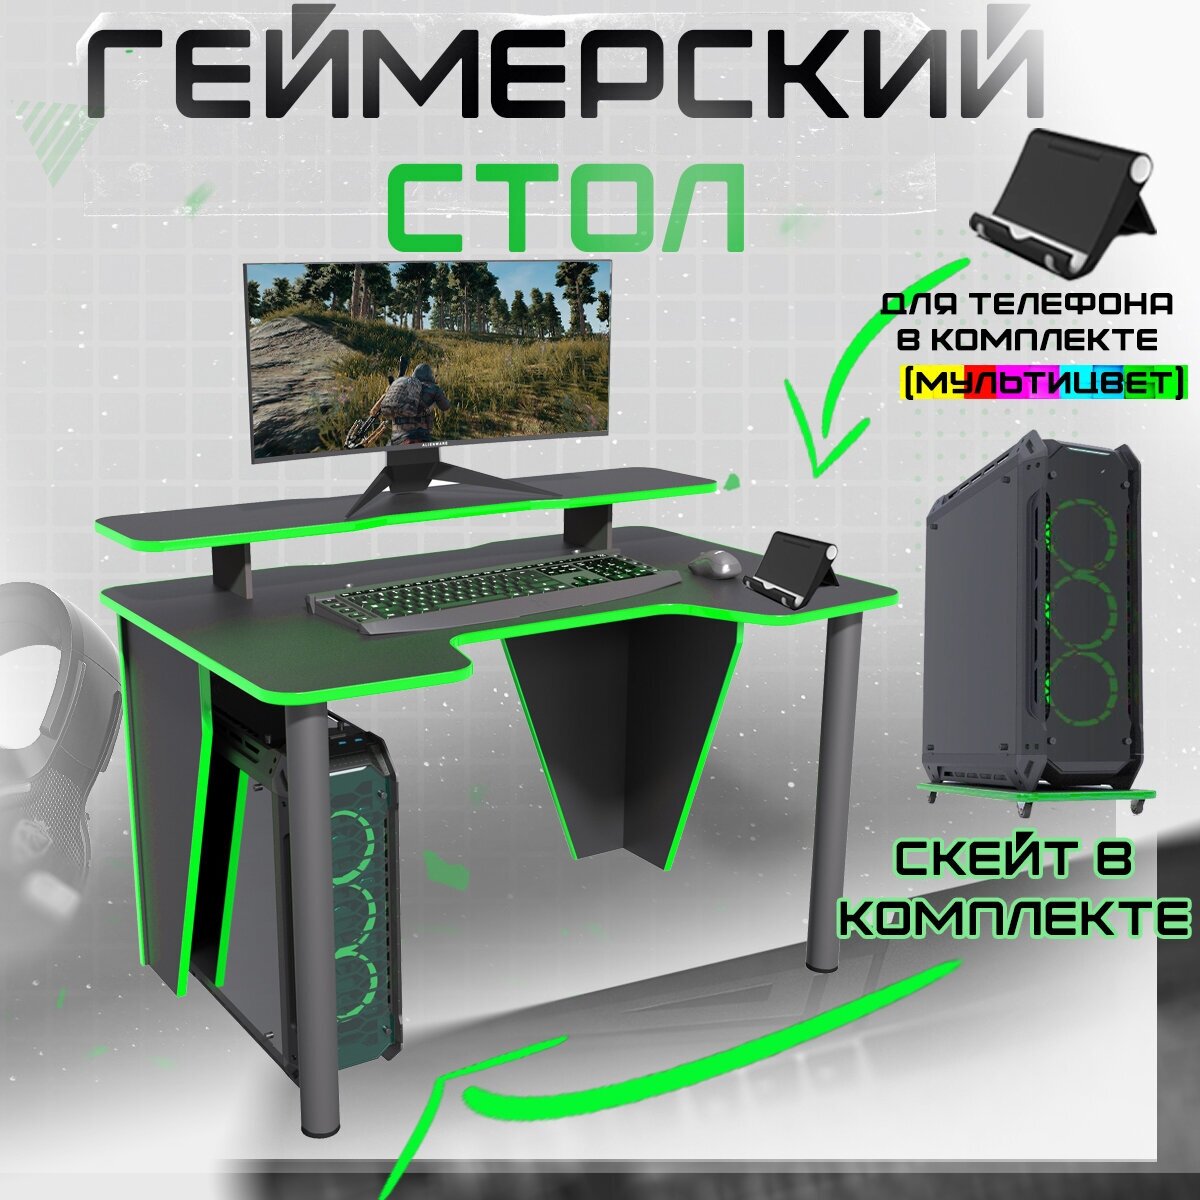 Геймерский игровой компьютерный письменный стол Вектор сэт черный зеленый 1100*720мм